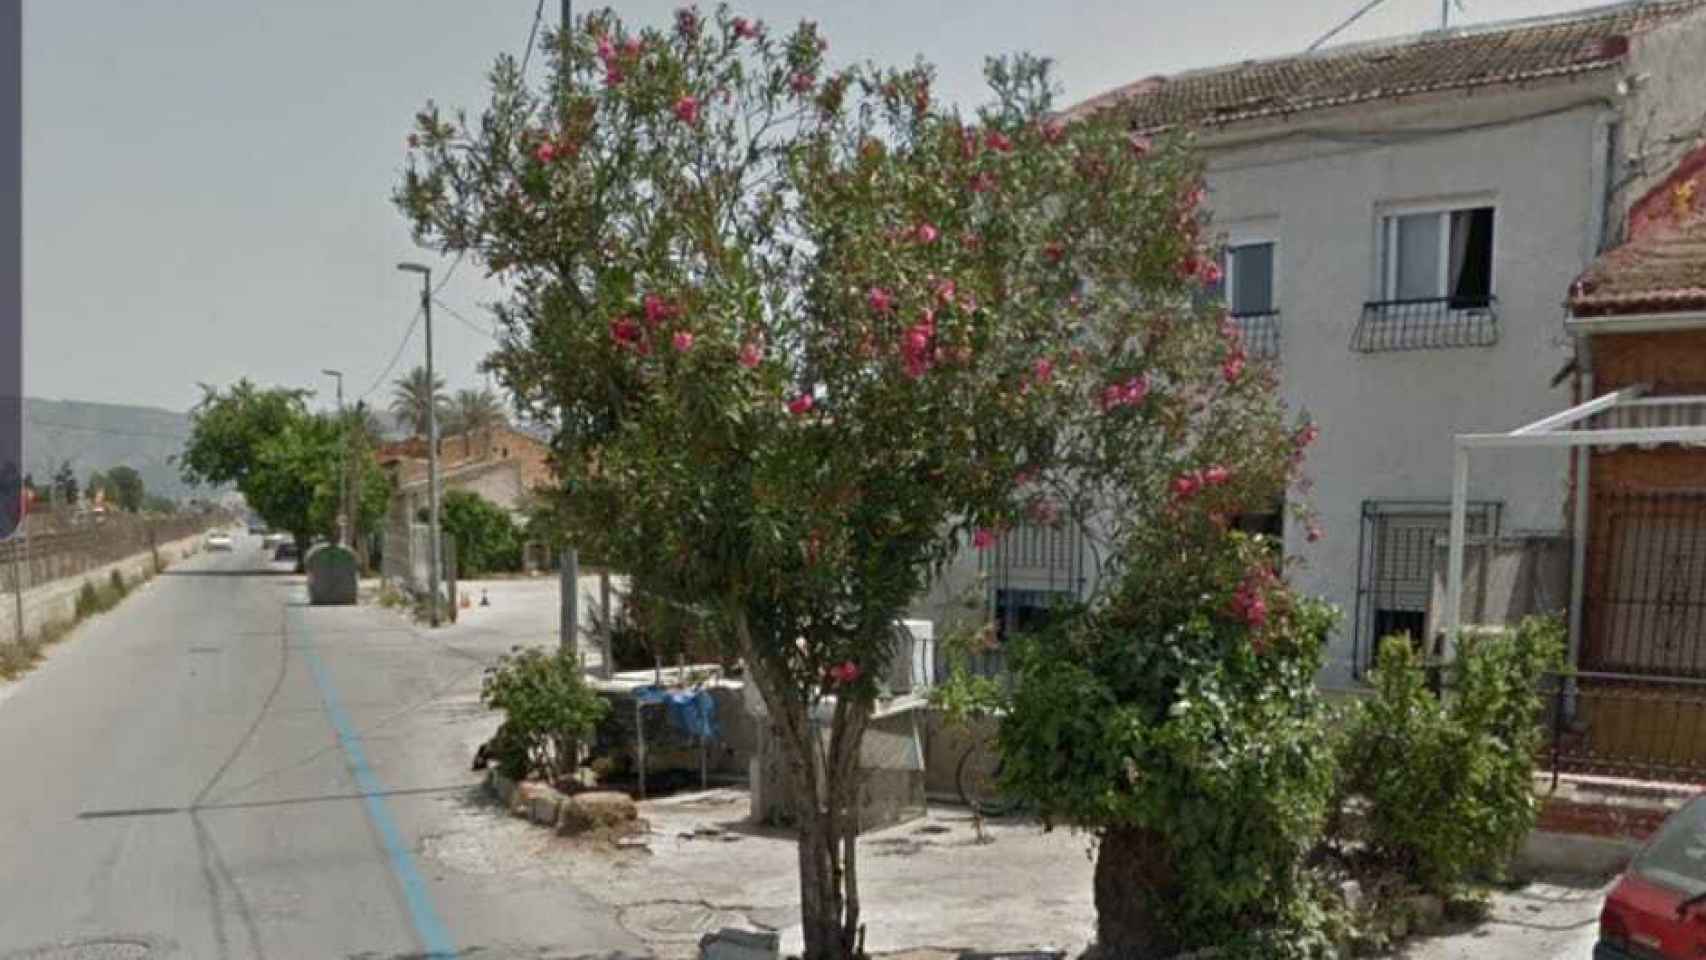 Zona de casas de la calle Orilla de la Vía del Barrio de Santiago el Mayor en Murcia donde se celebró la fiesta en la que el menor de edad sufrió el coma etílico.